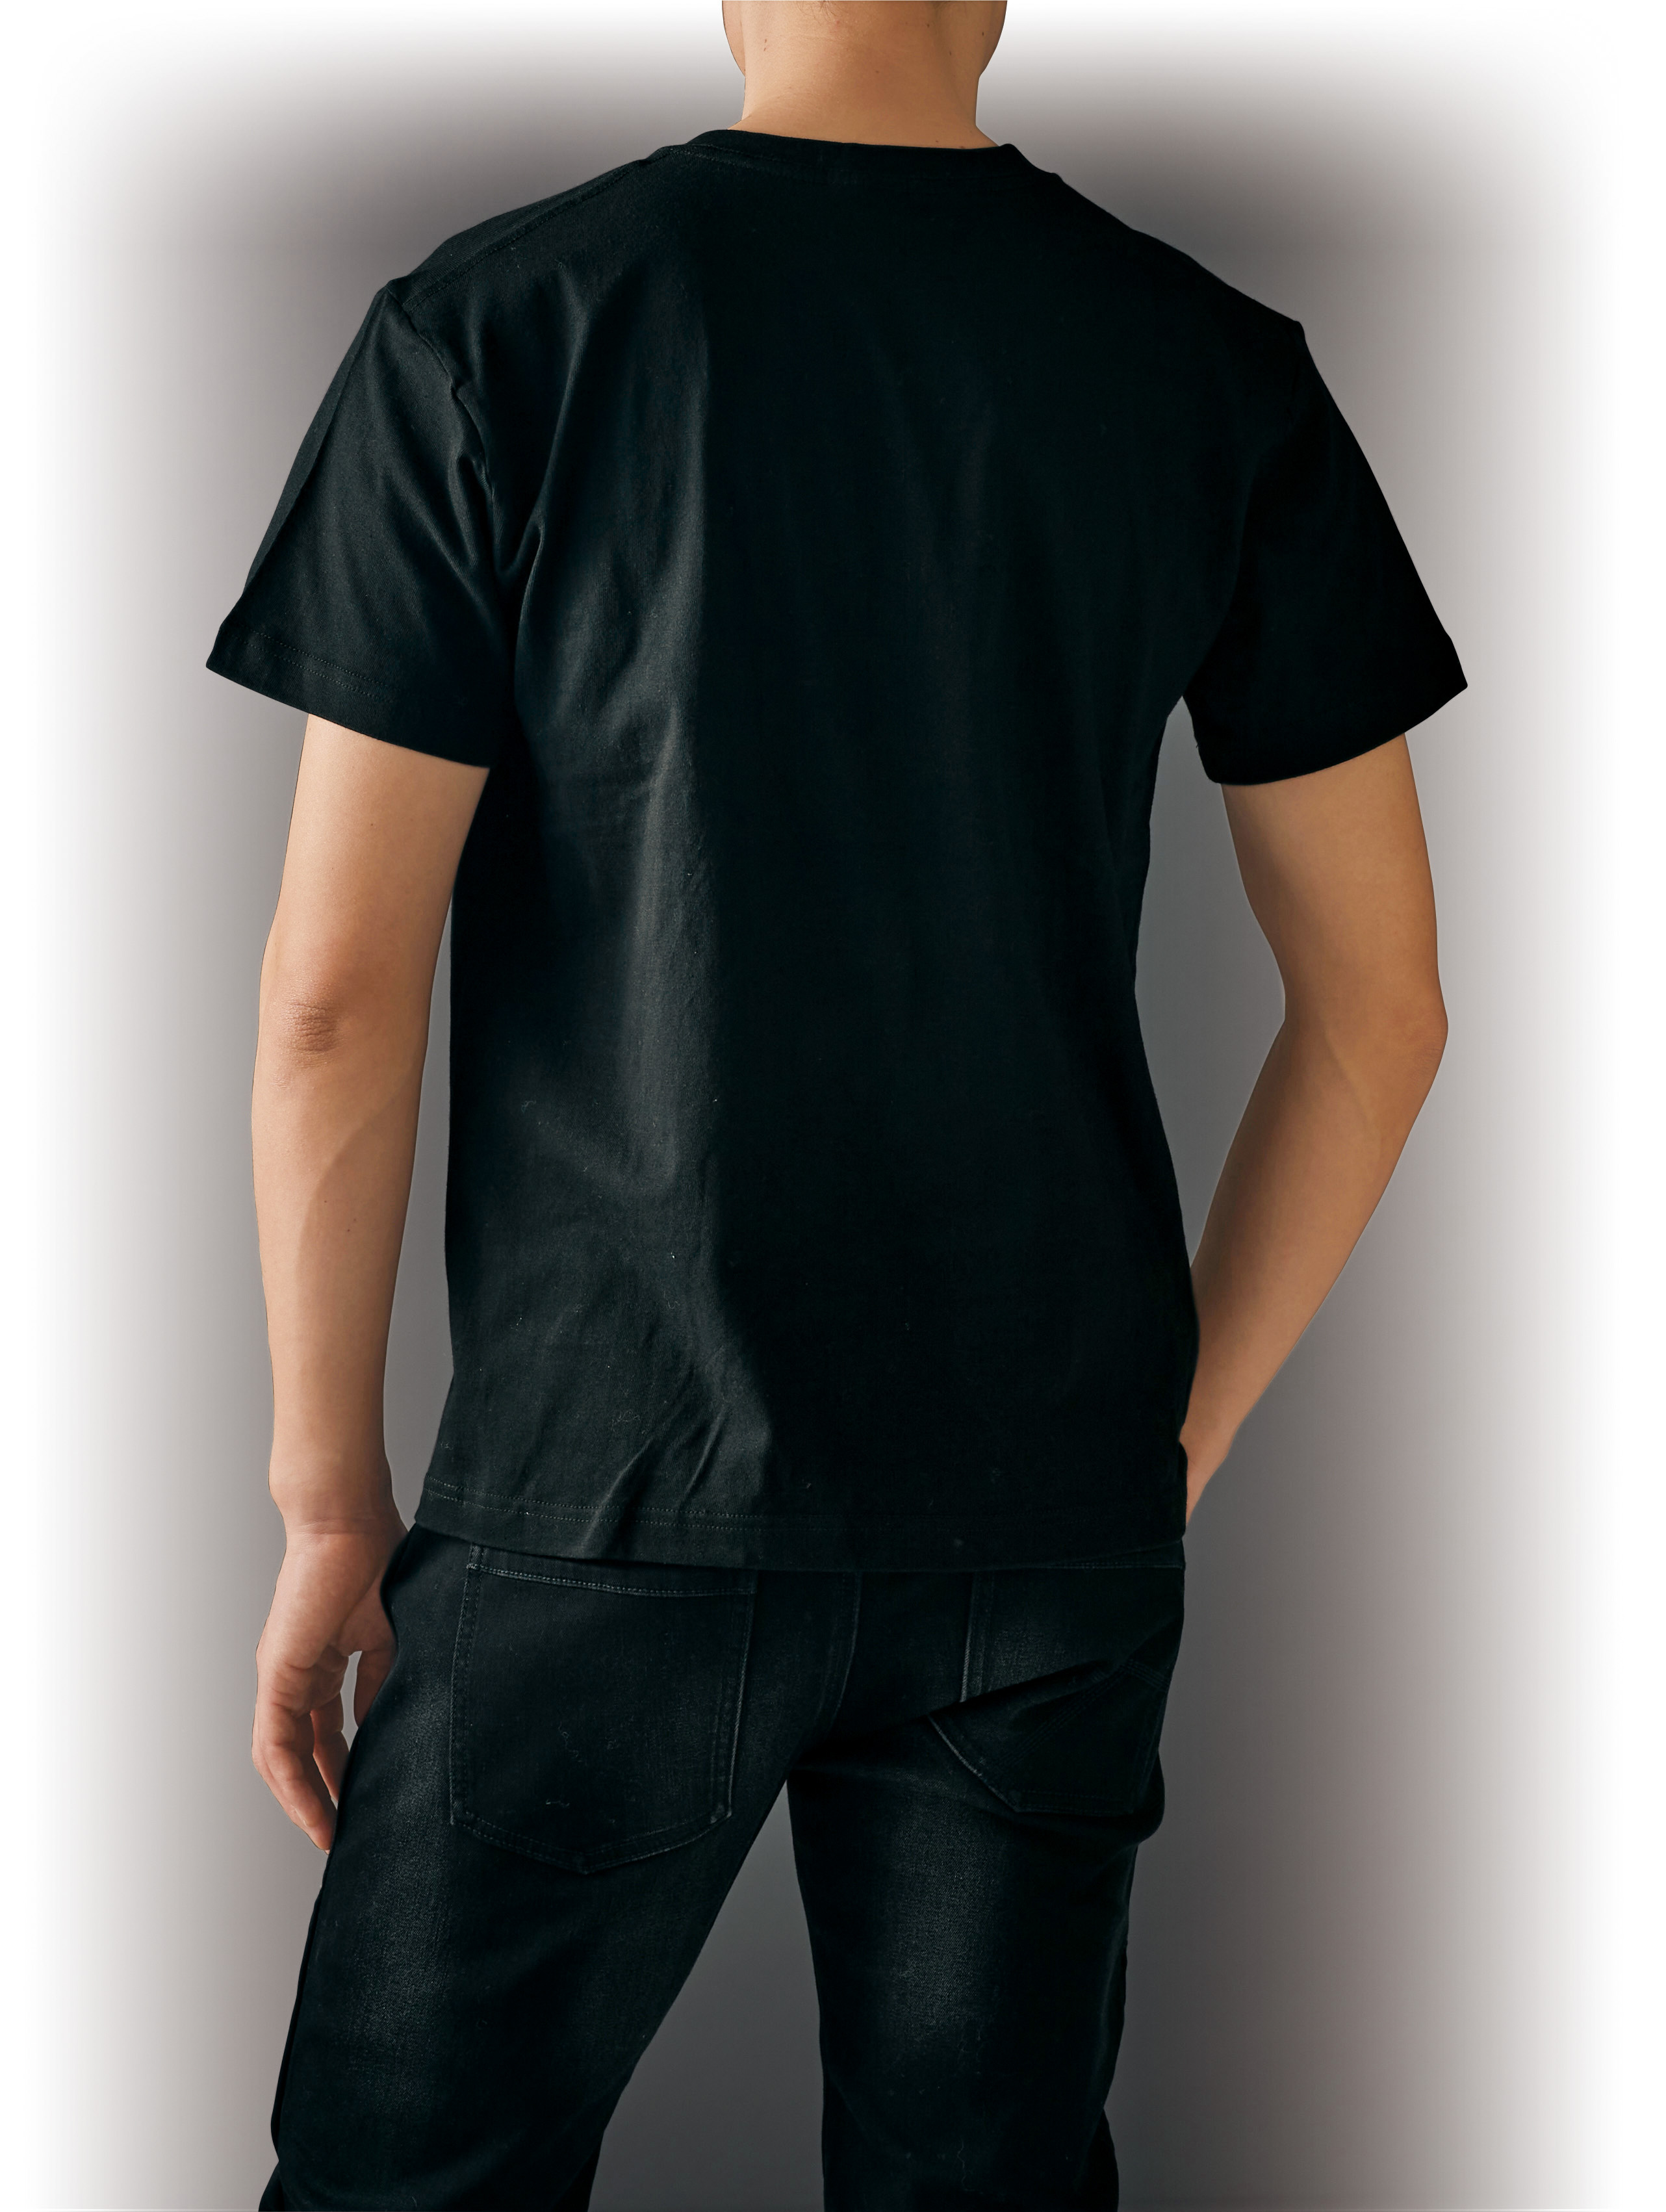 川崎重工デザイナーズTシャツ Casual Ninja ブラック M